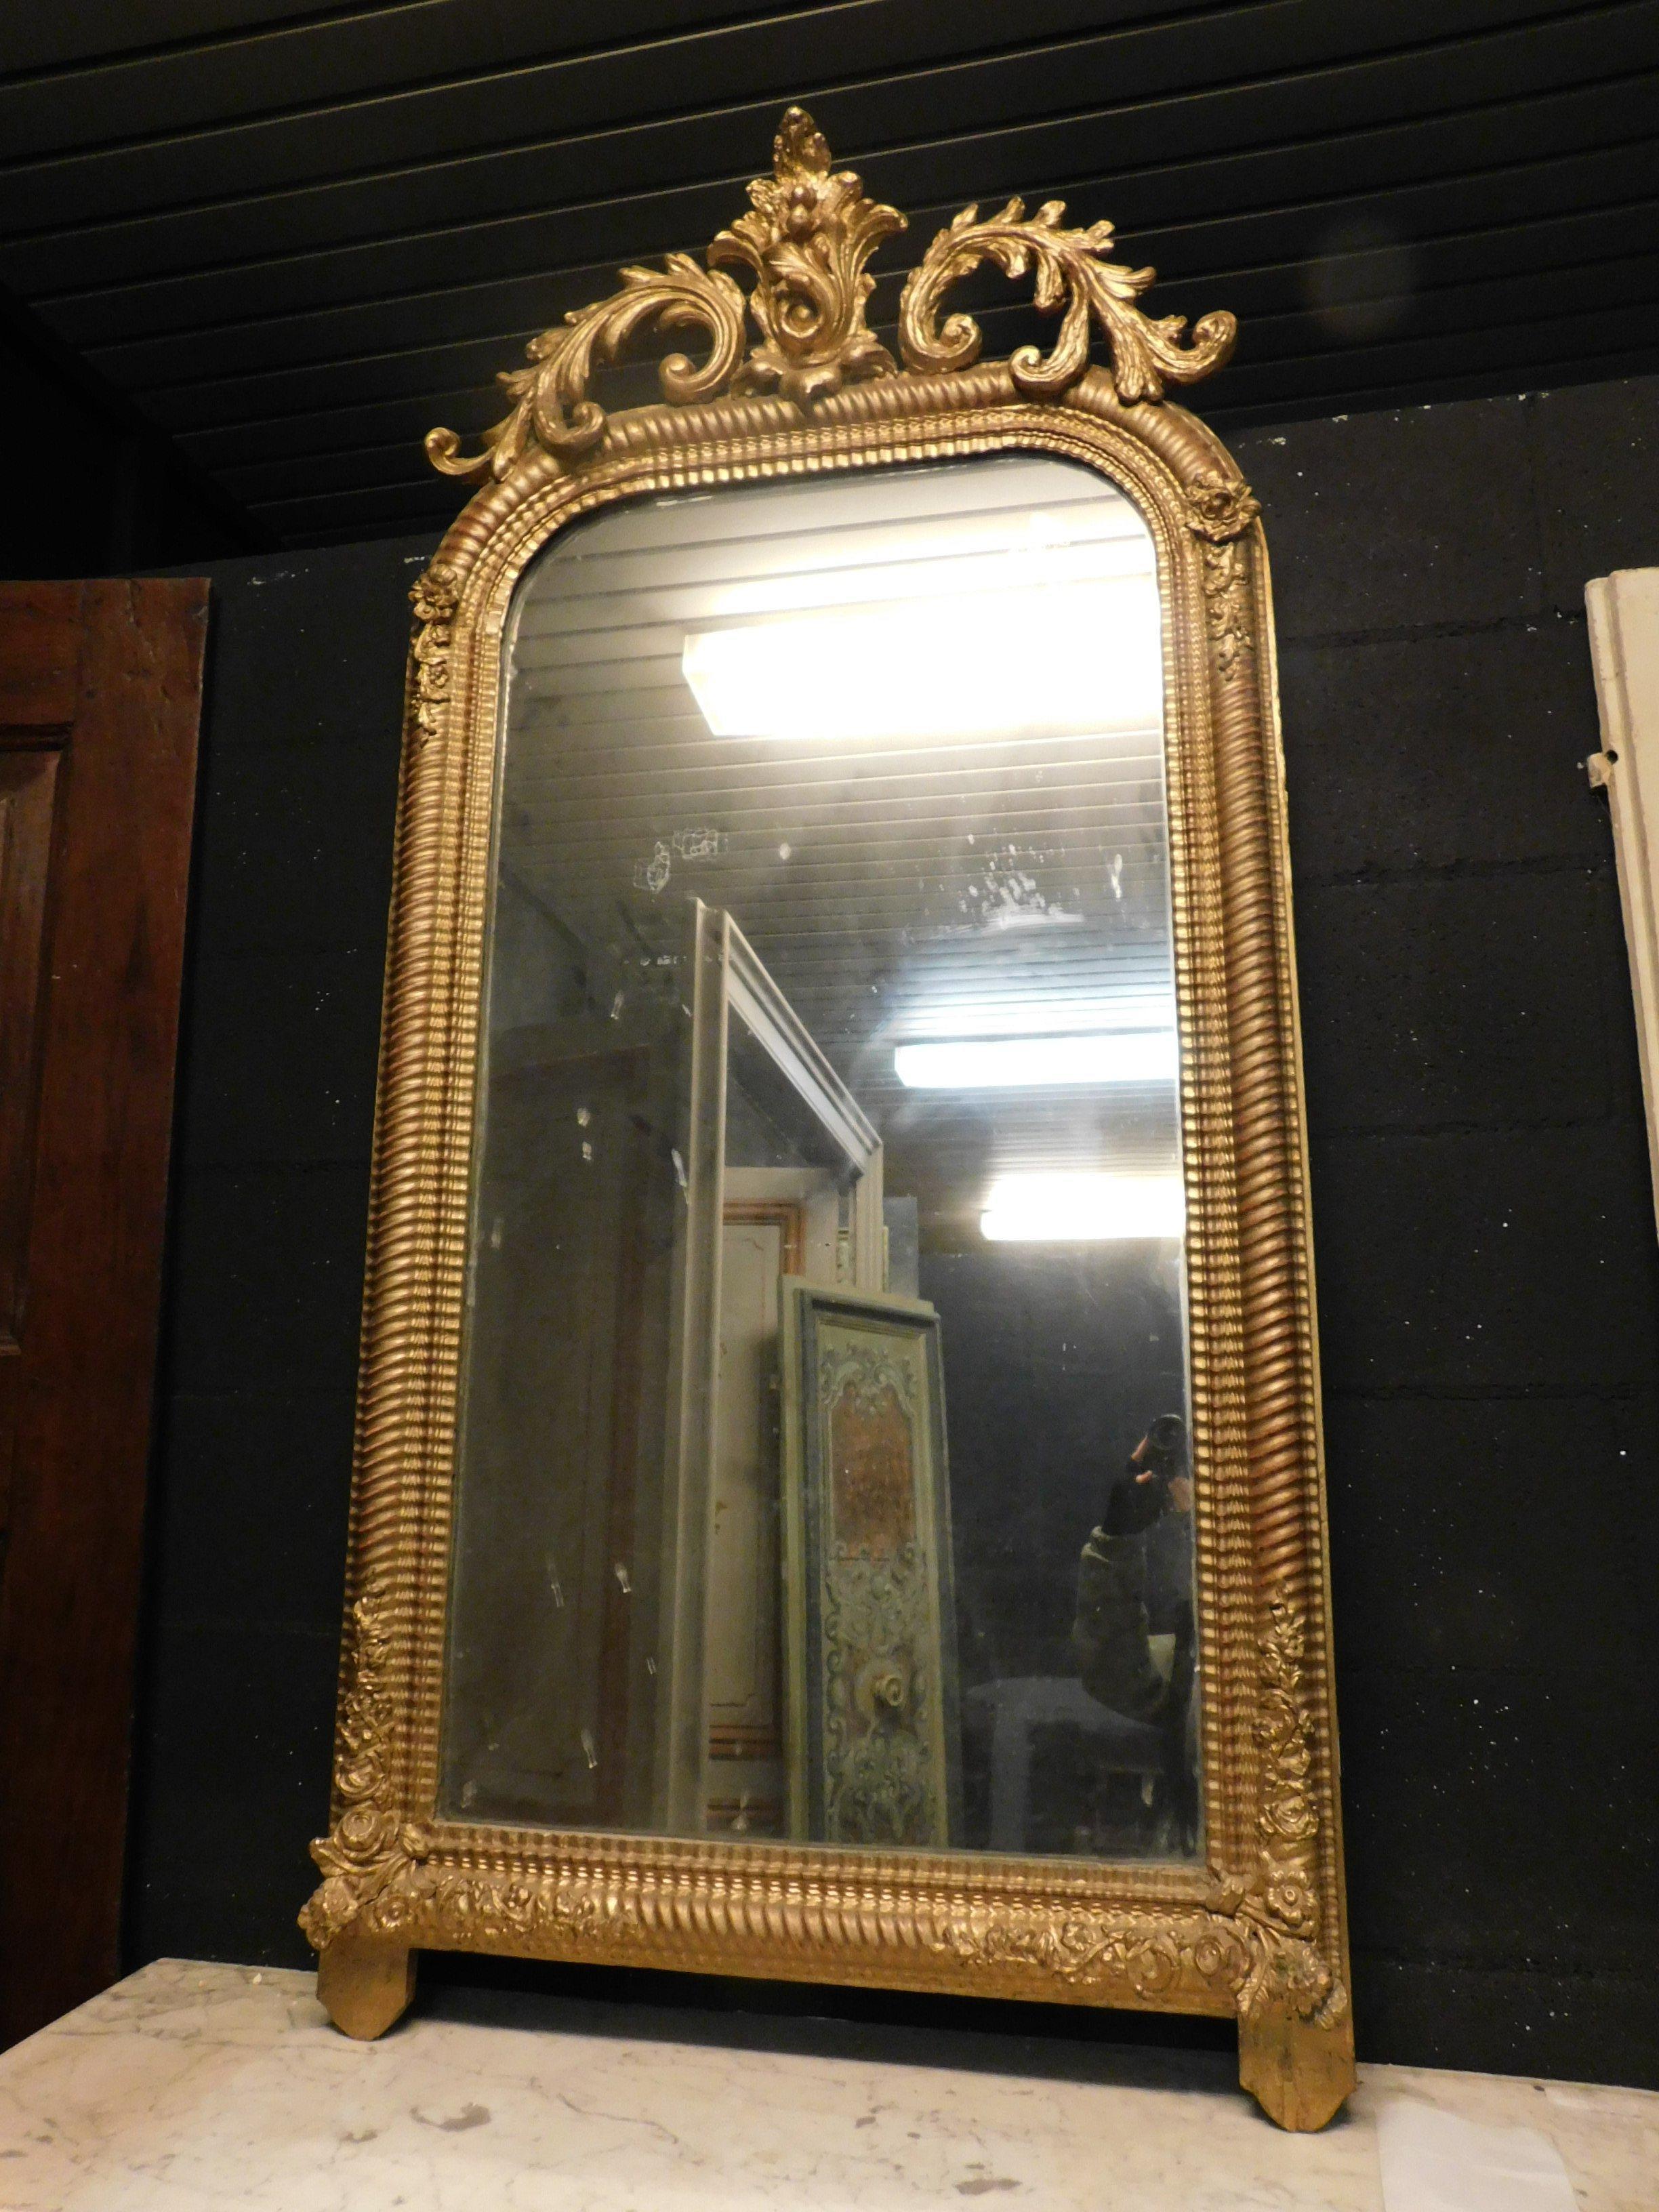 Miroir ancien en bois doré avec nervure sculptée, motifs floraux dans la partie supérieure et cadre sculpté, très riche et beau également en maintenant une forme géométrique linéaire qui peut être adaptée à tous les usages et intérieurs, construit